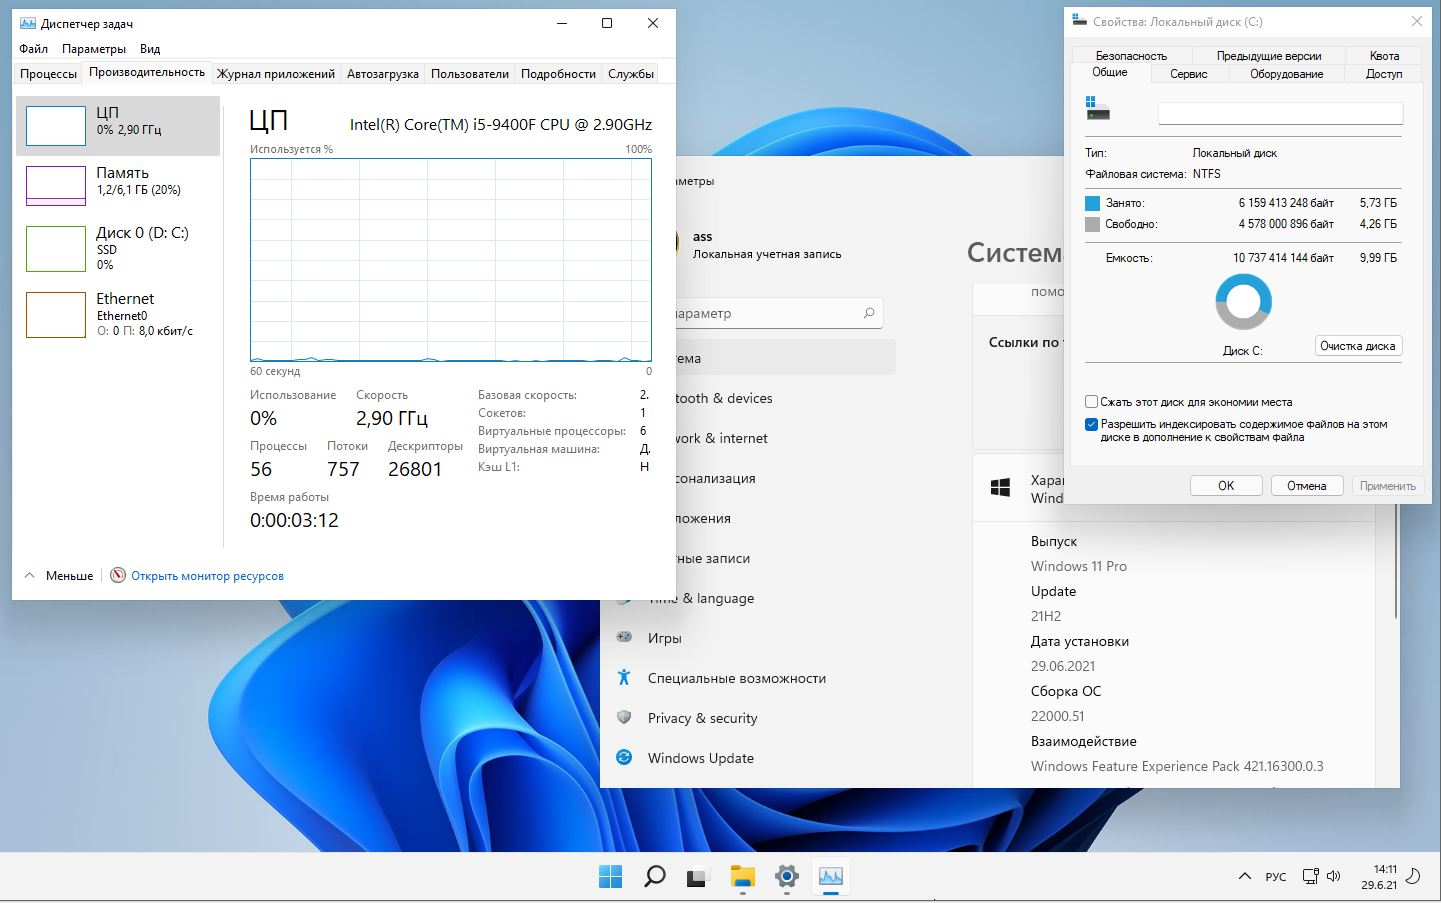 Windows 11 app. Windows 11 Pro 21h2. Win 11 Скриншоты. Системные требования виндовс 11. Виндовс 11 характеристики.